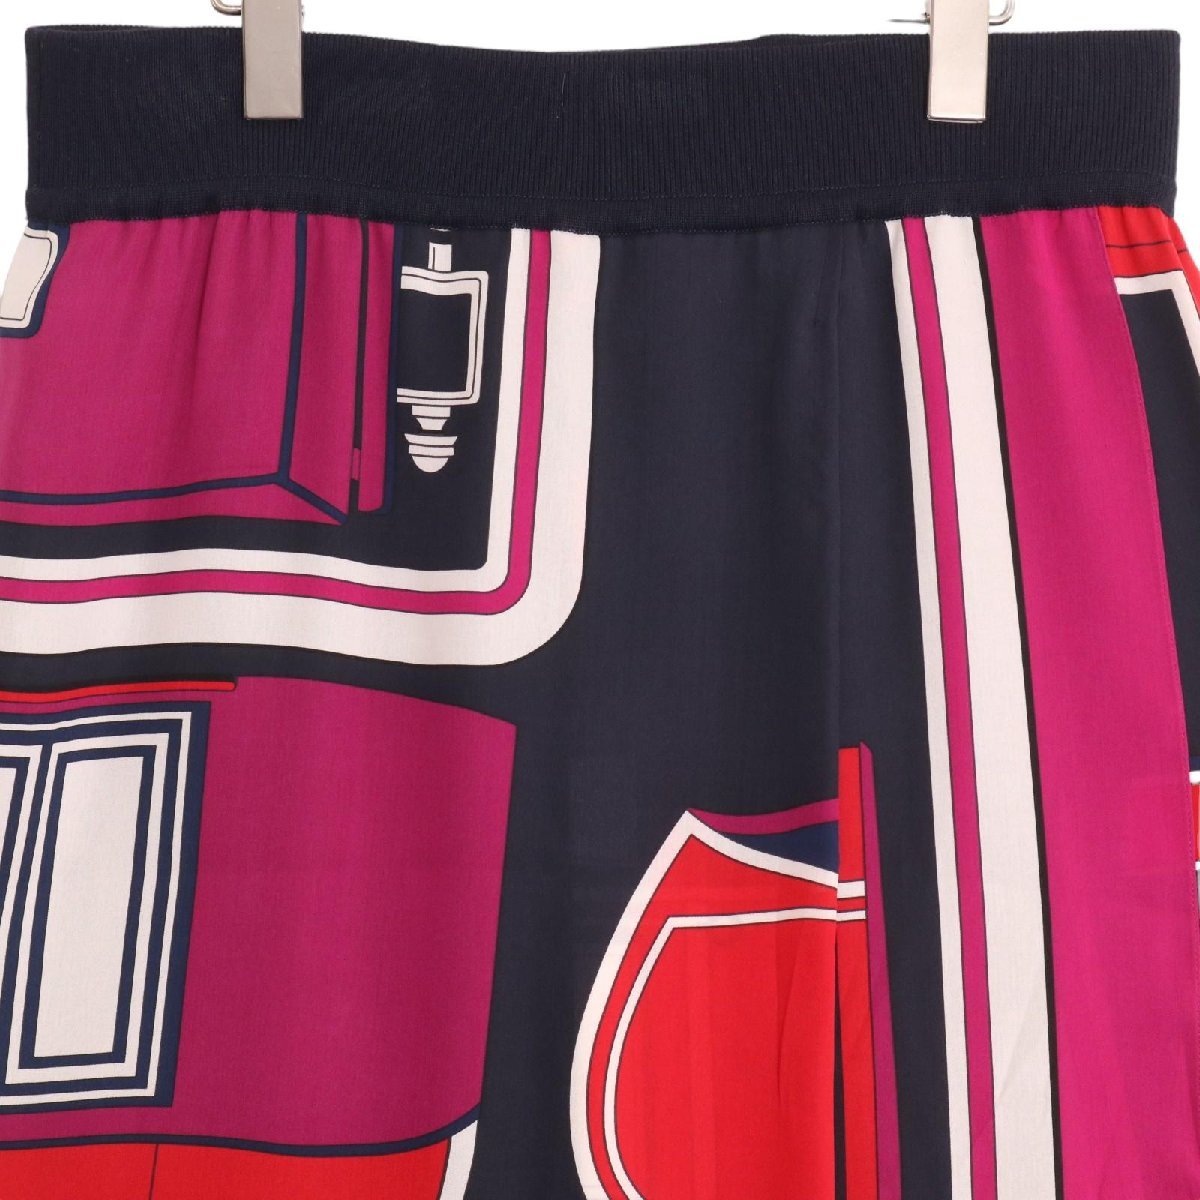 HERMES Hermes многоцветный шелк юбка многоцветный 38 юбка шелк женский б/у 